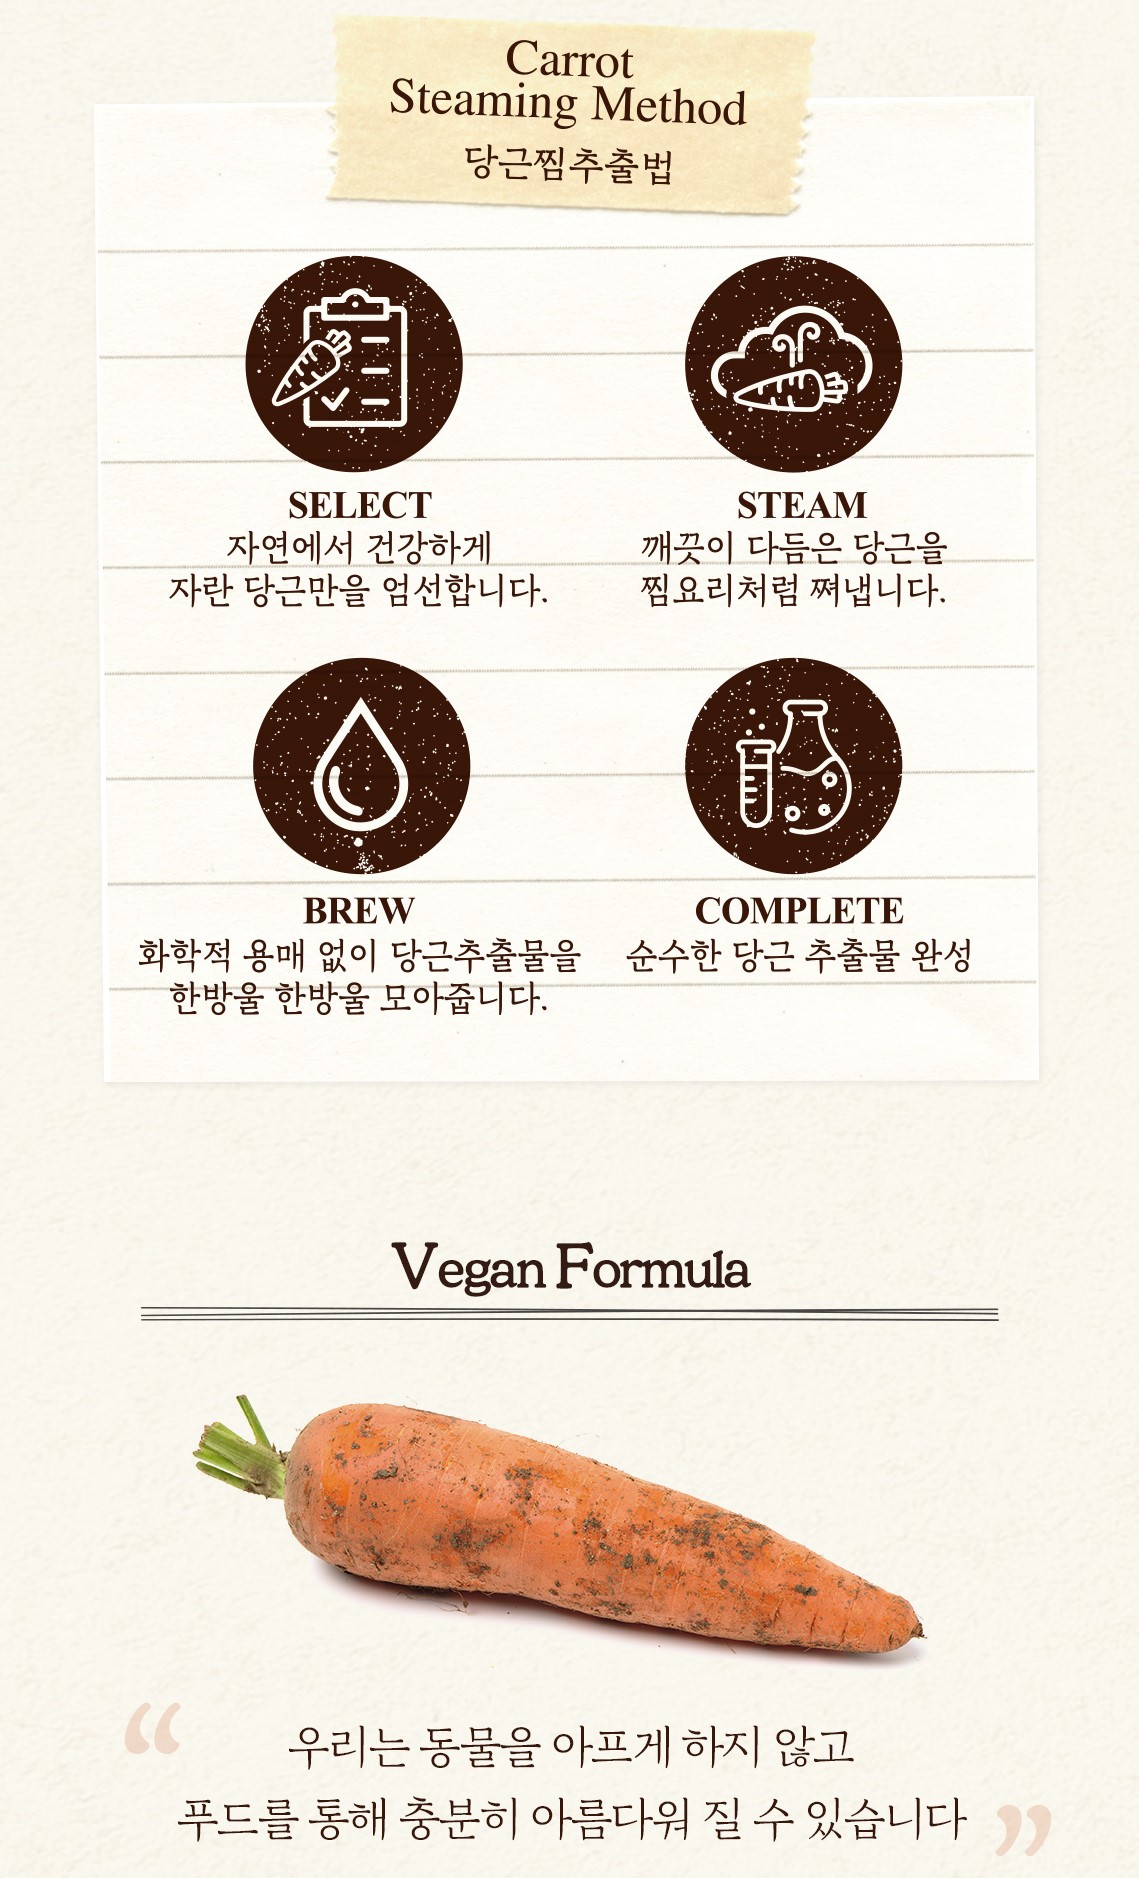 韓國食品-[Skinfood] Carrot Carotene Calming Water Pad 250g (60 pads)